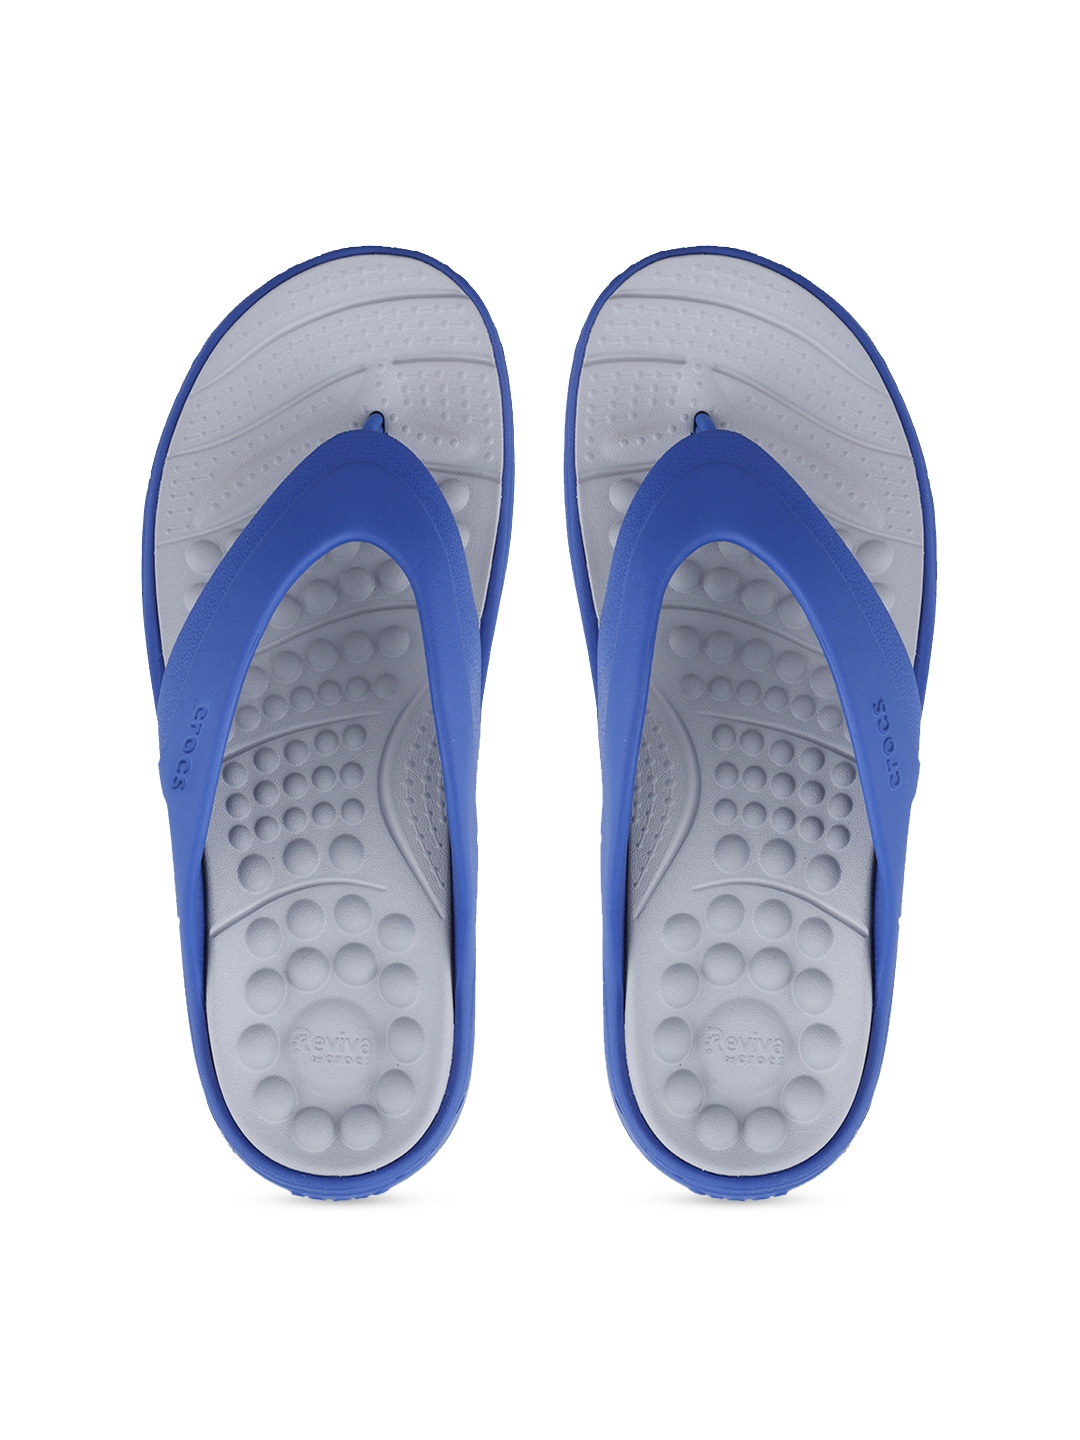 Buy Crocs Reviva Unisex Blue Solid Slip On - Flip Flops for Unisex ...